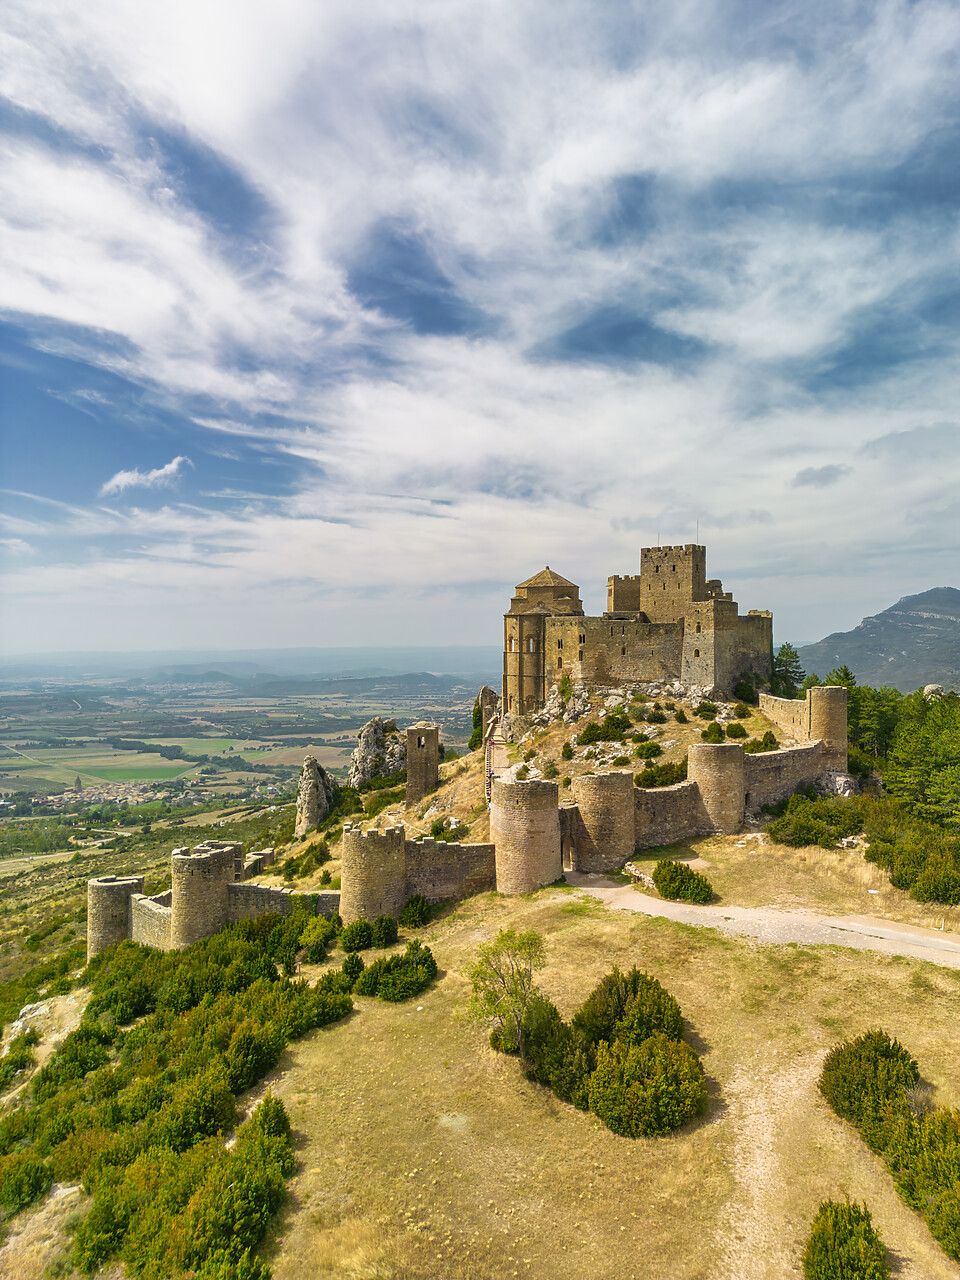 #230325-1 - Loarre Castle, Loarre, Huesca province, Aragon, Spain